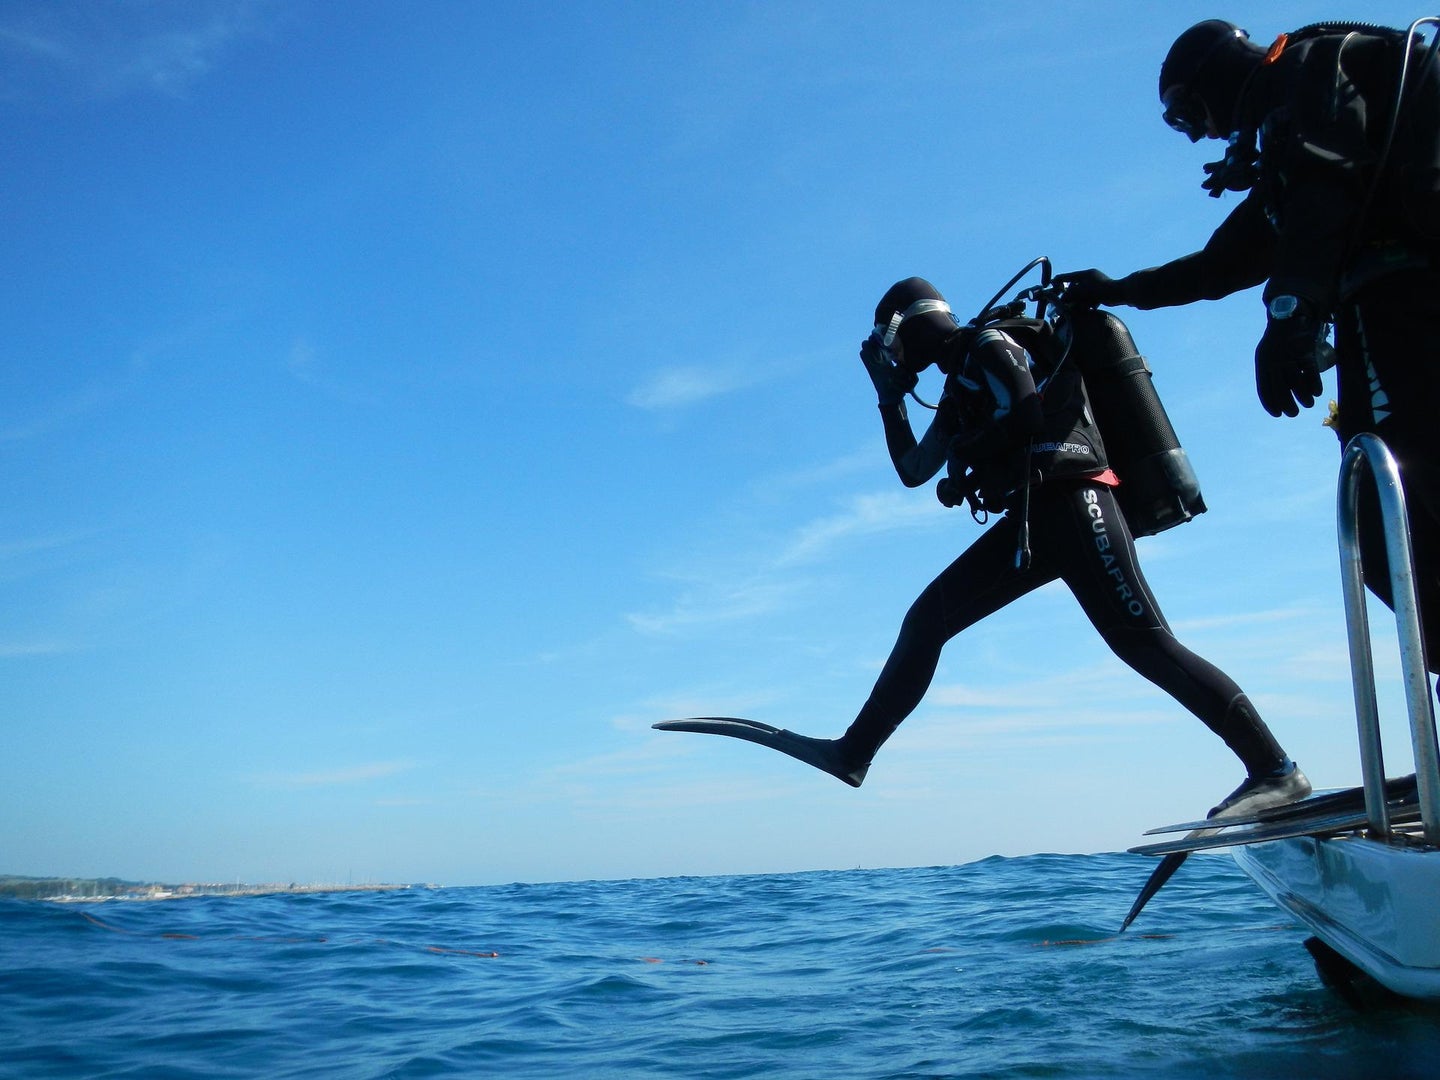 A scuba diver takes a step into the ocean.